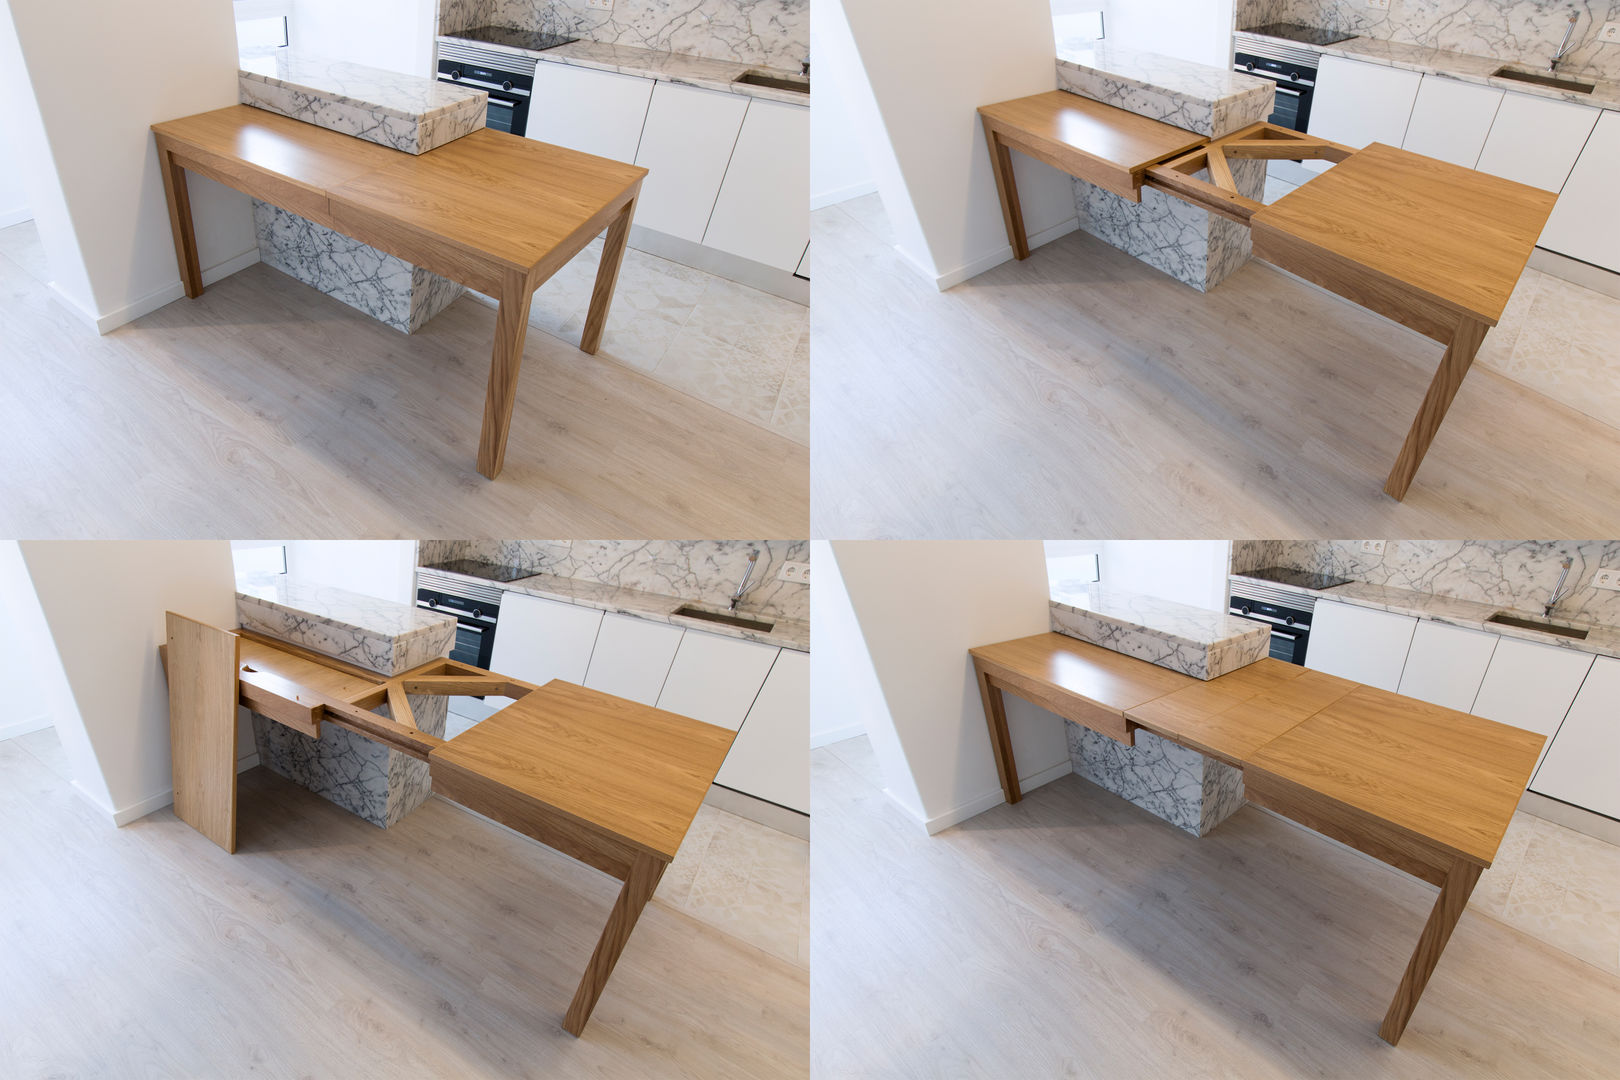 Remodelação integral de apartamento T2 , atelier B-L atelier B-L Modern kitchen Solid Wood Multicolored Tables & chairs